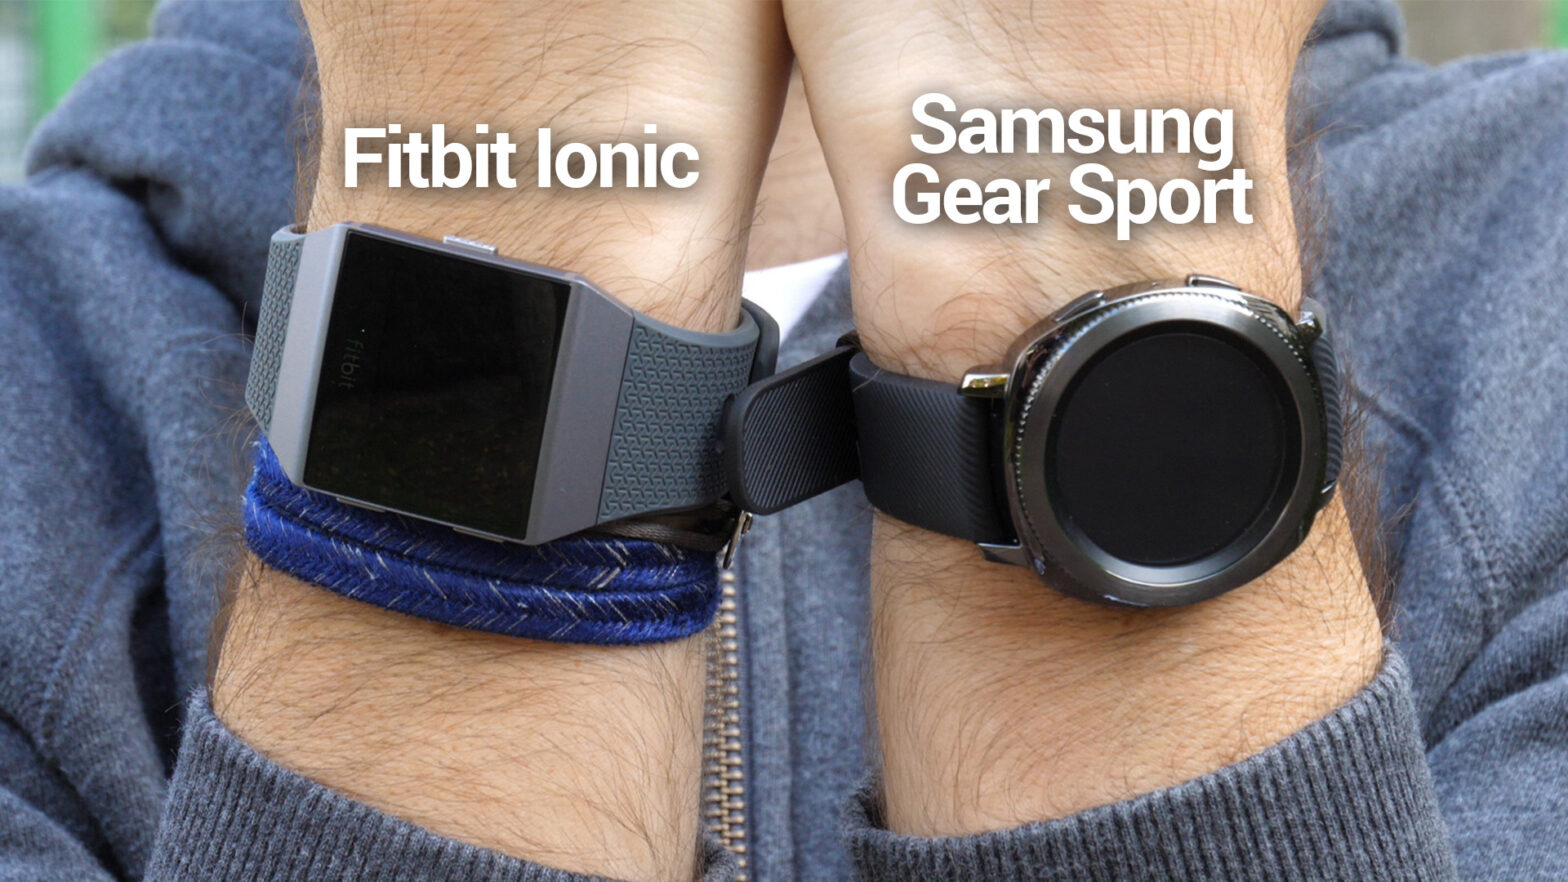 Samsung Gear Sport ou Fitbit Ionic : laquelle choisir pour faire du sport